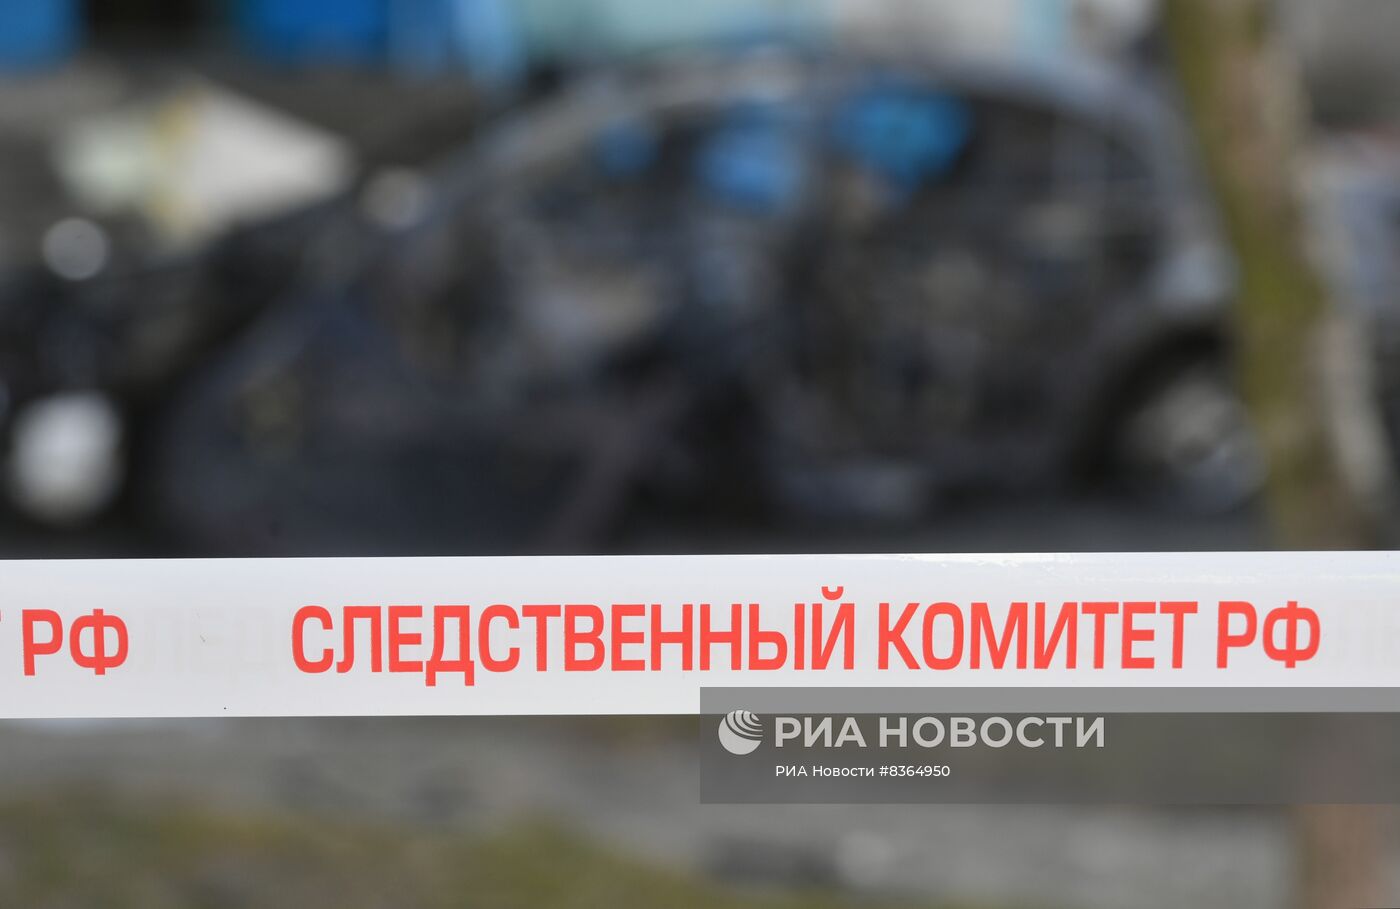 Автомобиль взорван в городе Энергодар Запорожской области